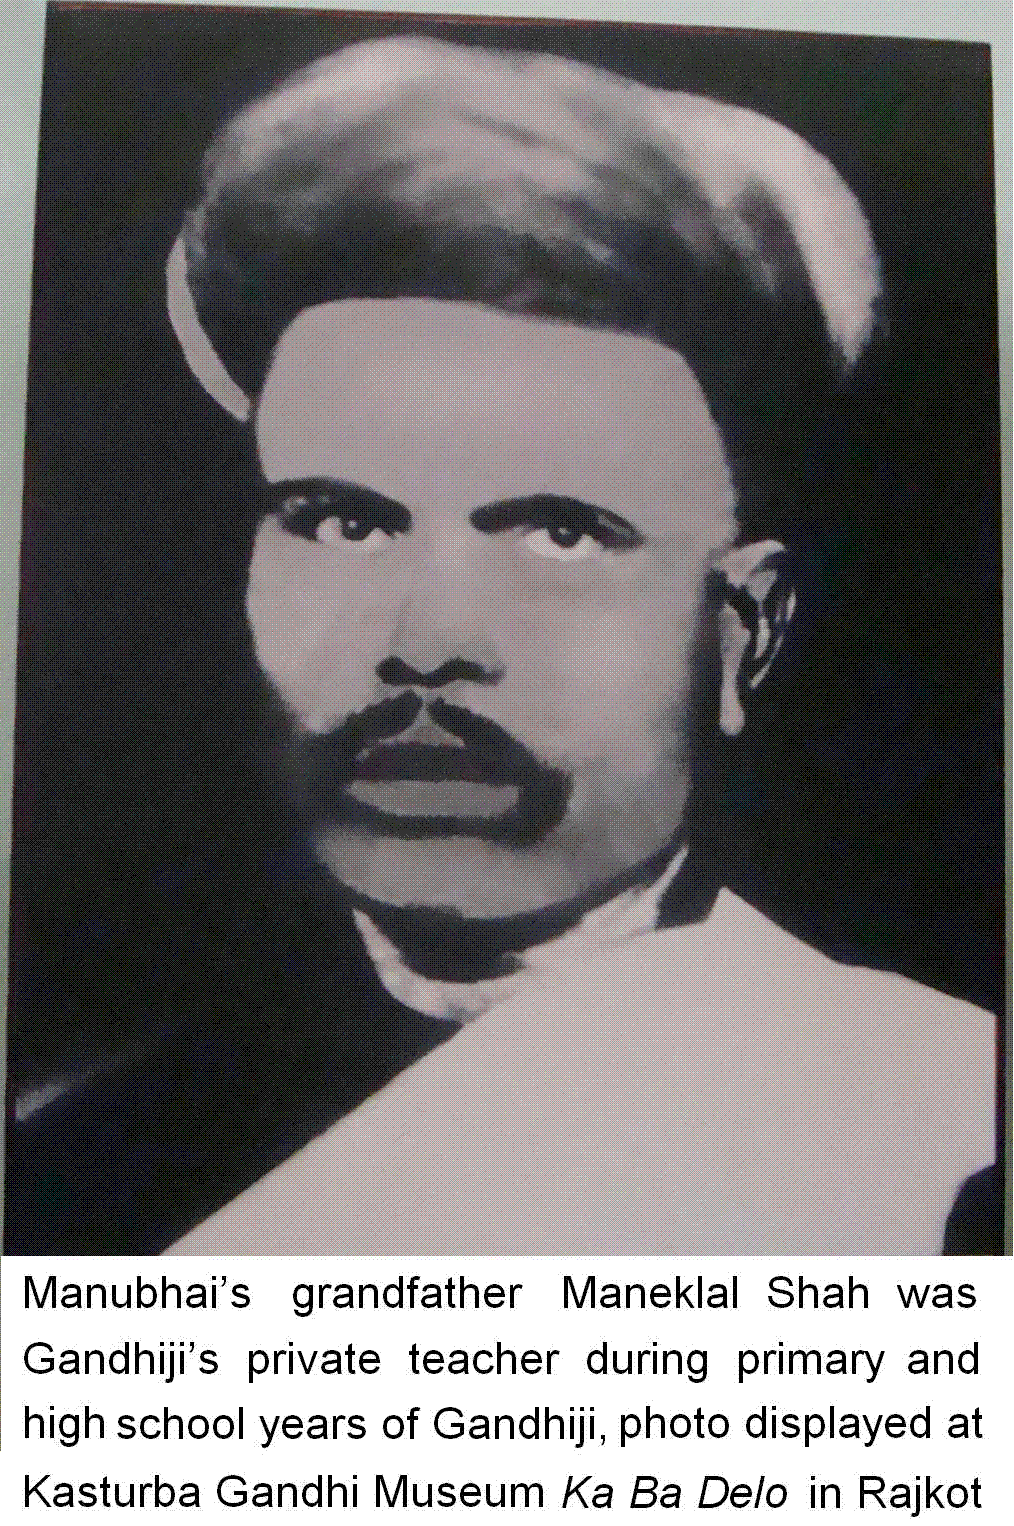 Maneklal Shah at Ka Ba Gandhi Delo Rajkot